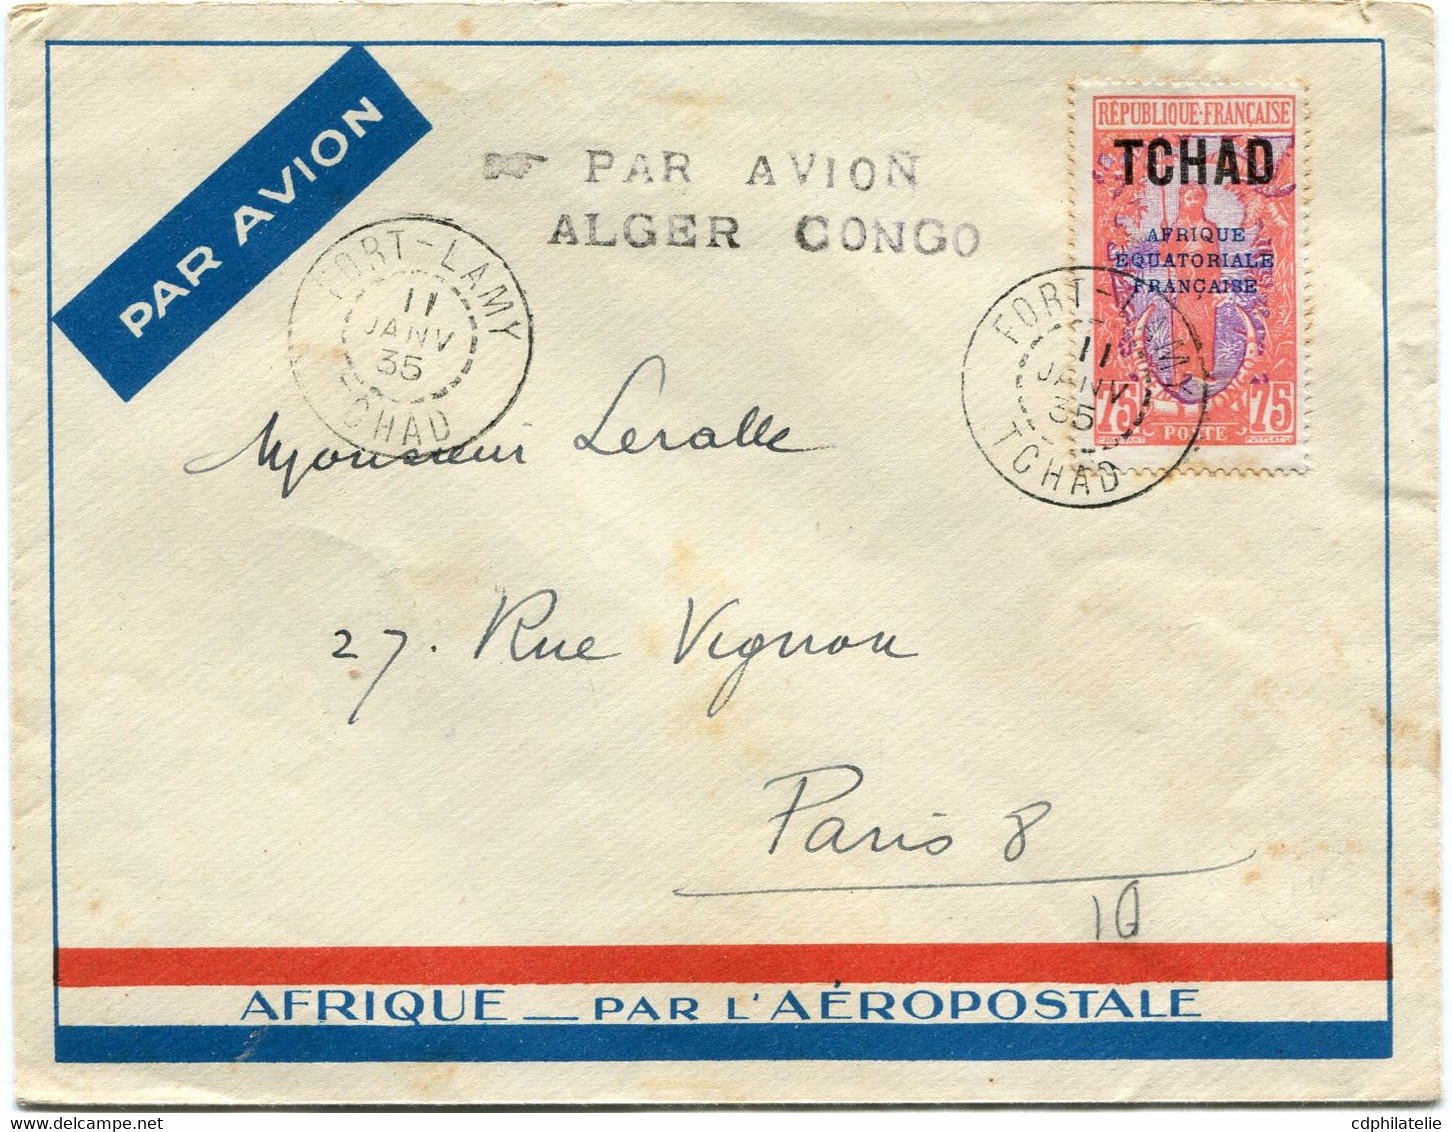 TCHAD LETTRE PAR AVION AVEC CACHET " PAR AVION ALGER CONGO " DEPART FORT-LAMY 11 JANV 35 TCHAD POUR LA FRANCE - Covers & Documents